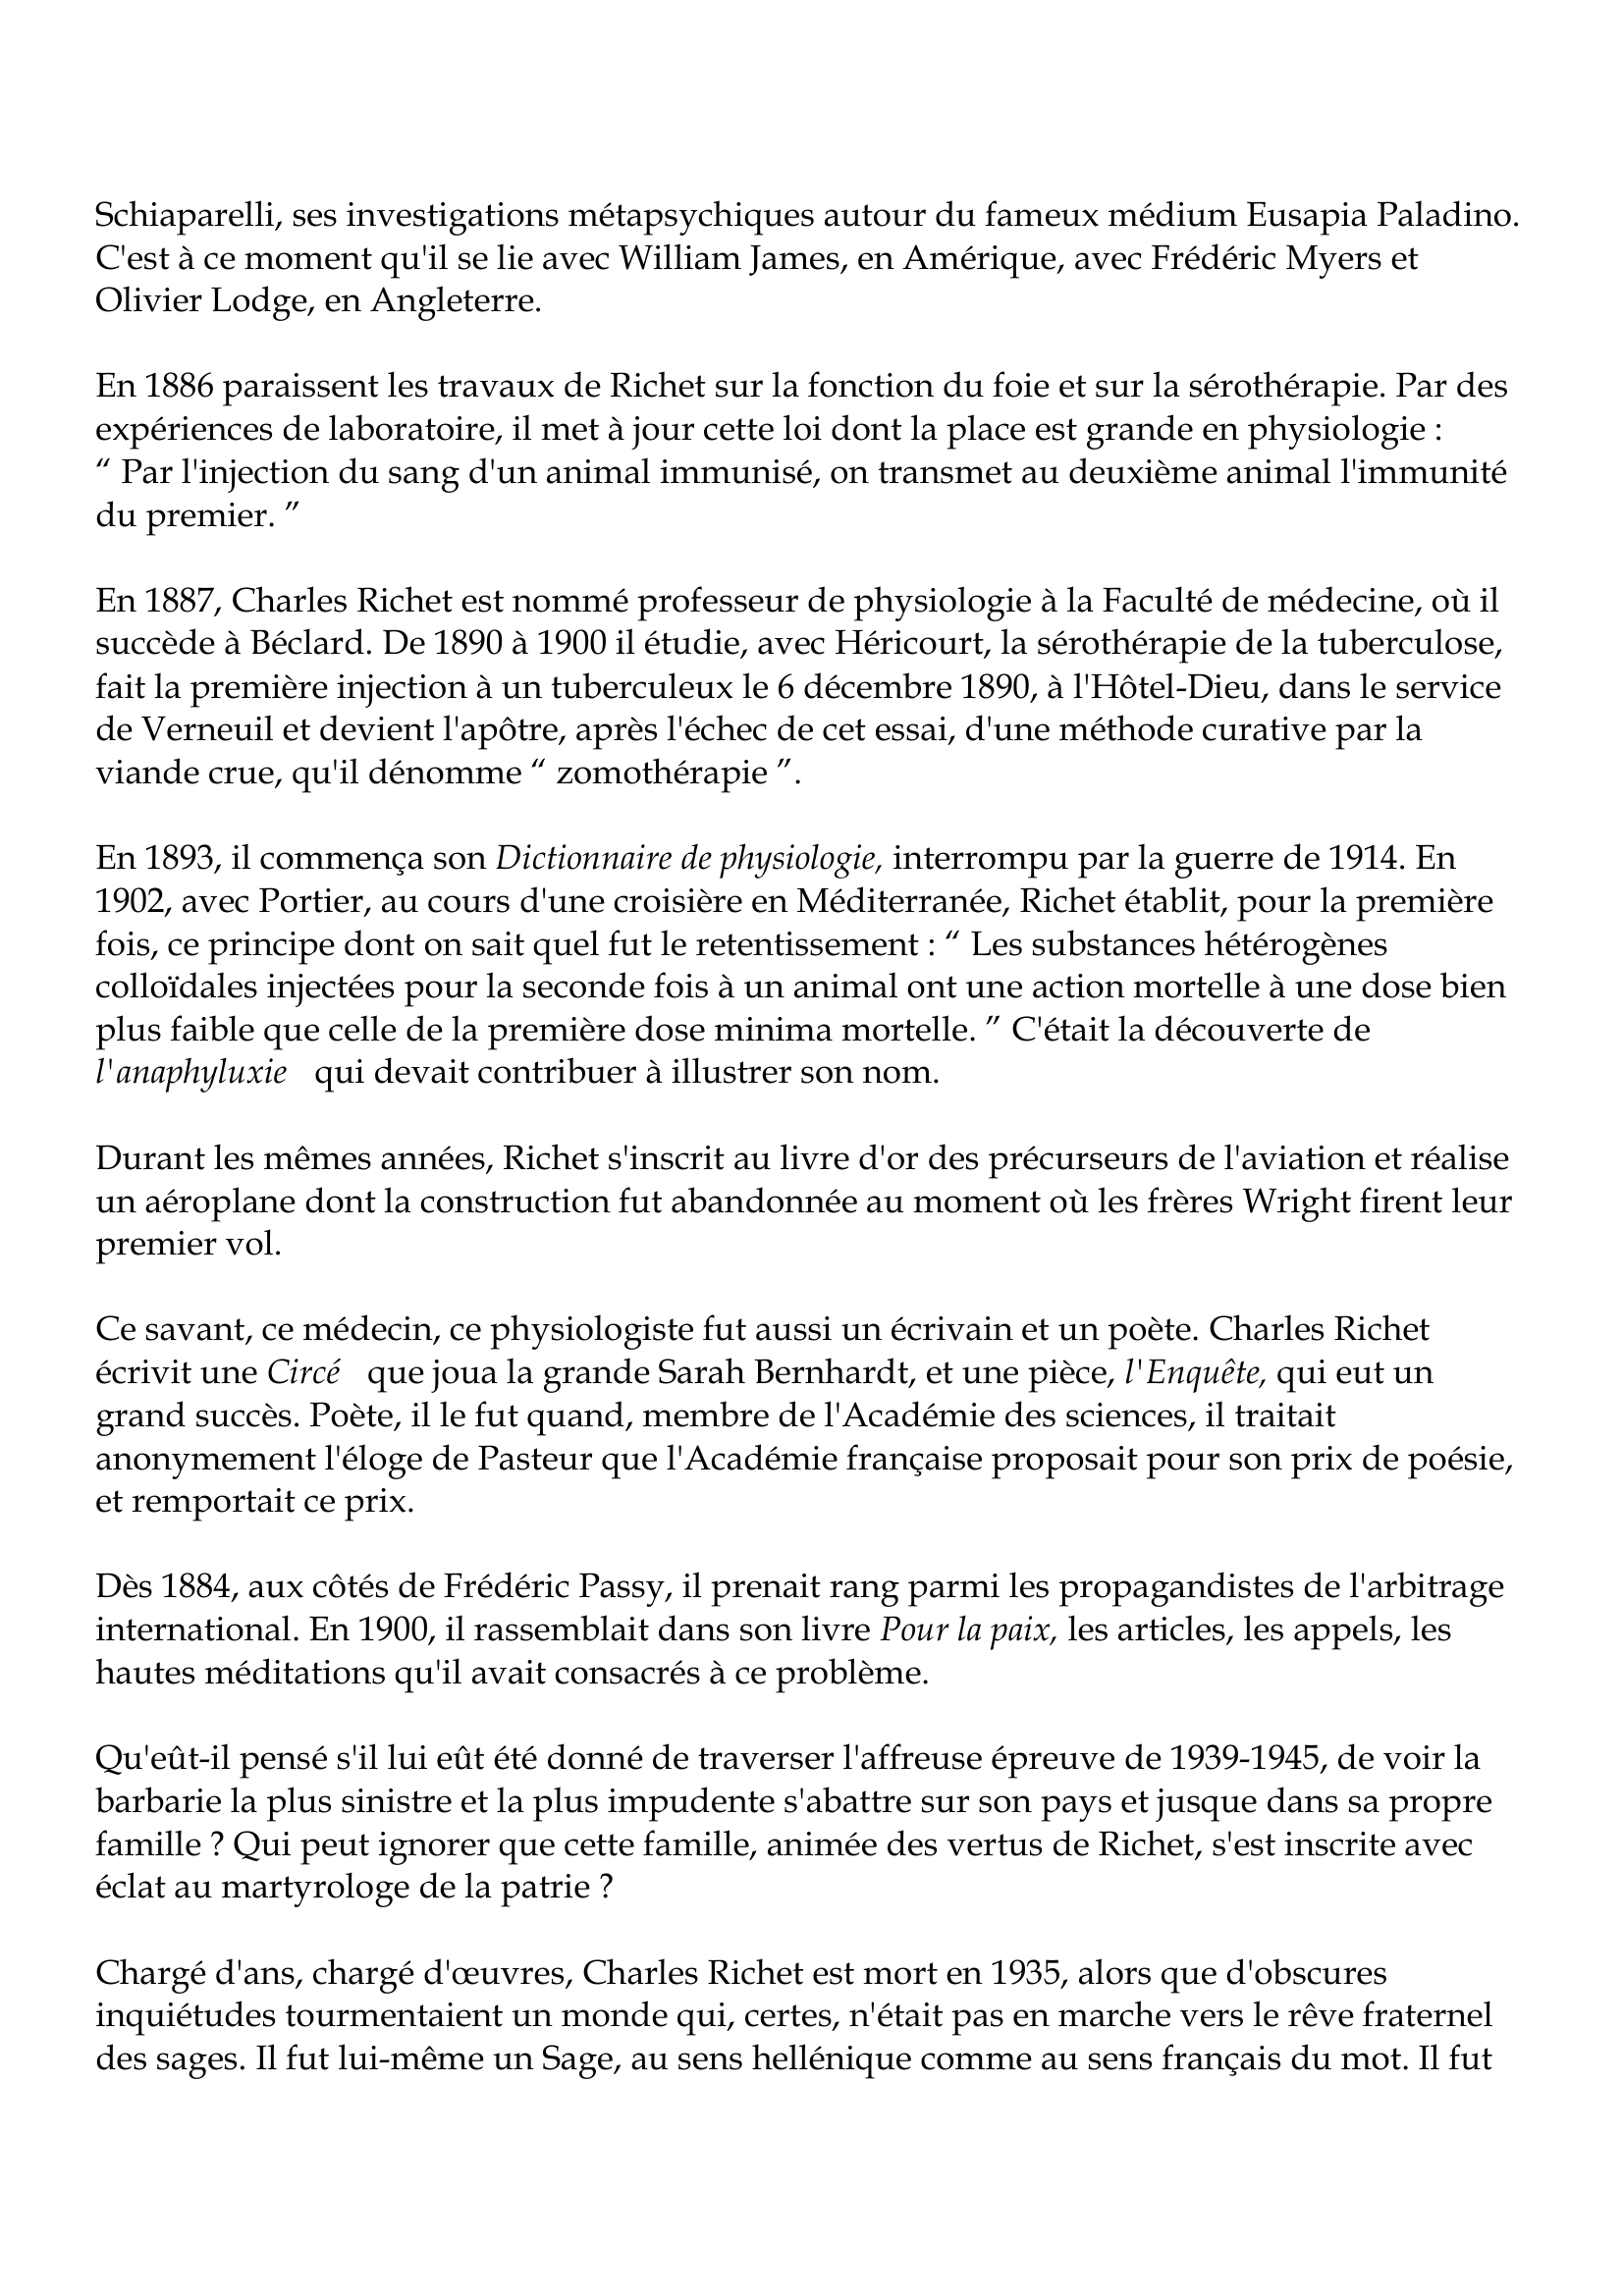 Prévisualisation du document Charles Richet
1850-1935
La vie, l'oeuvre, la pensée de Charles Richet mettent